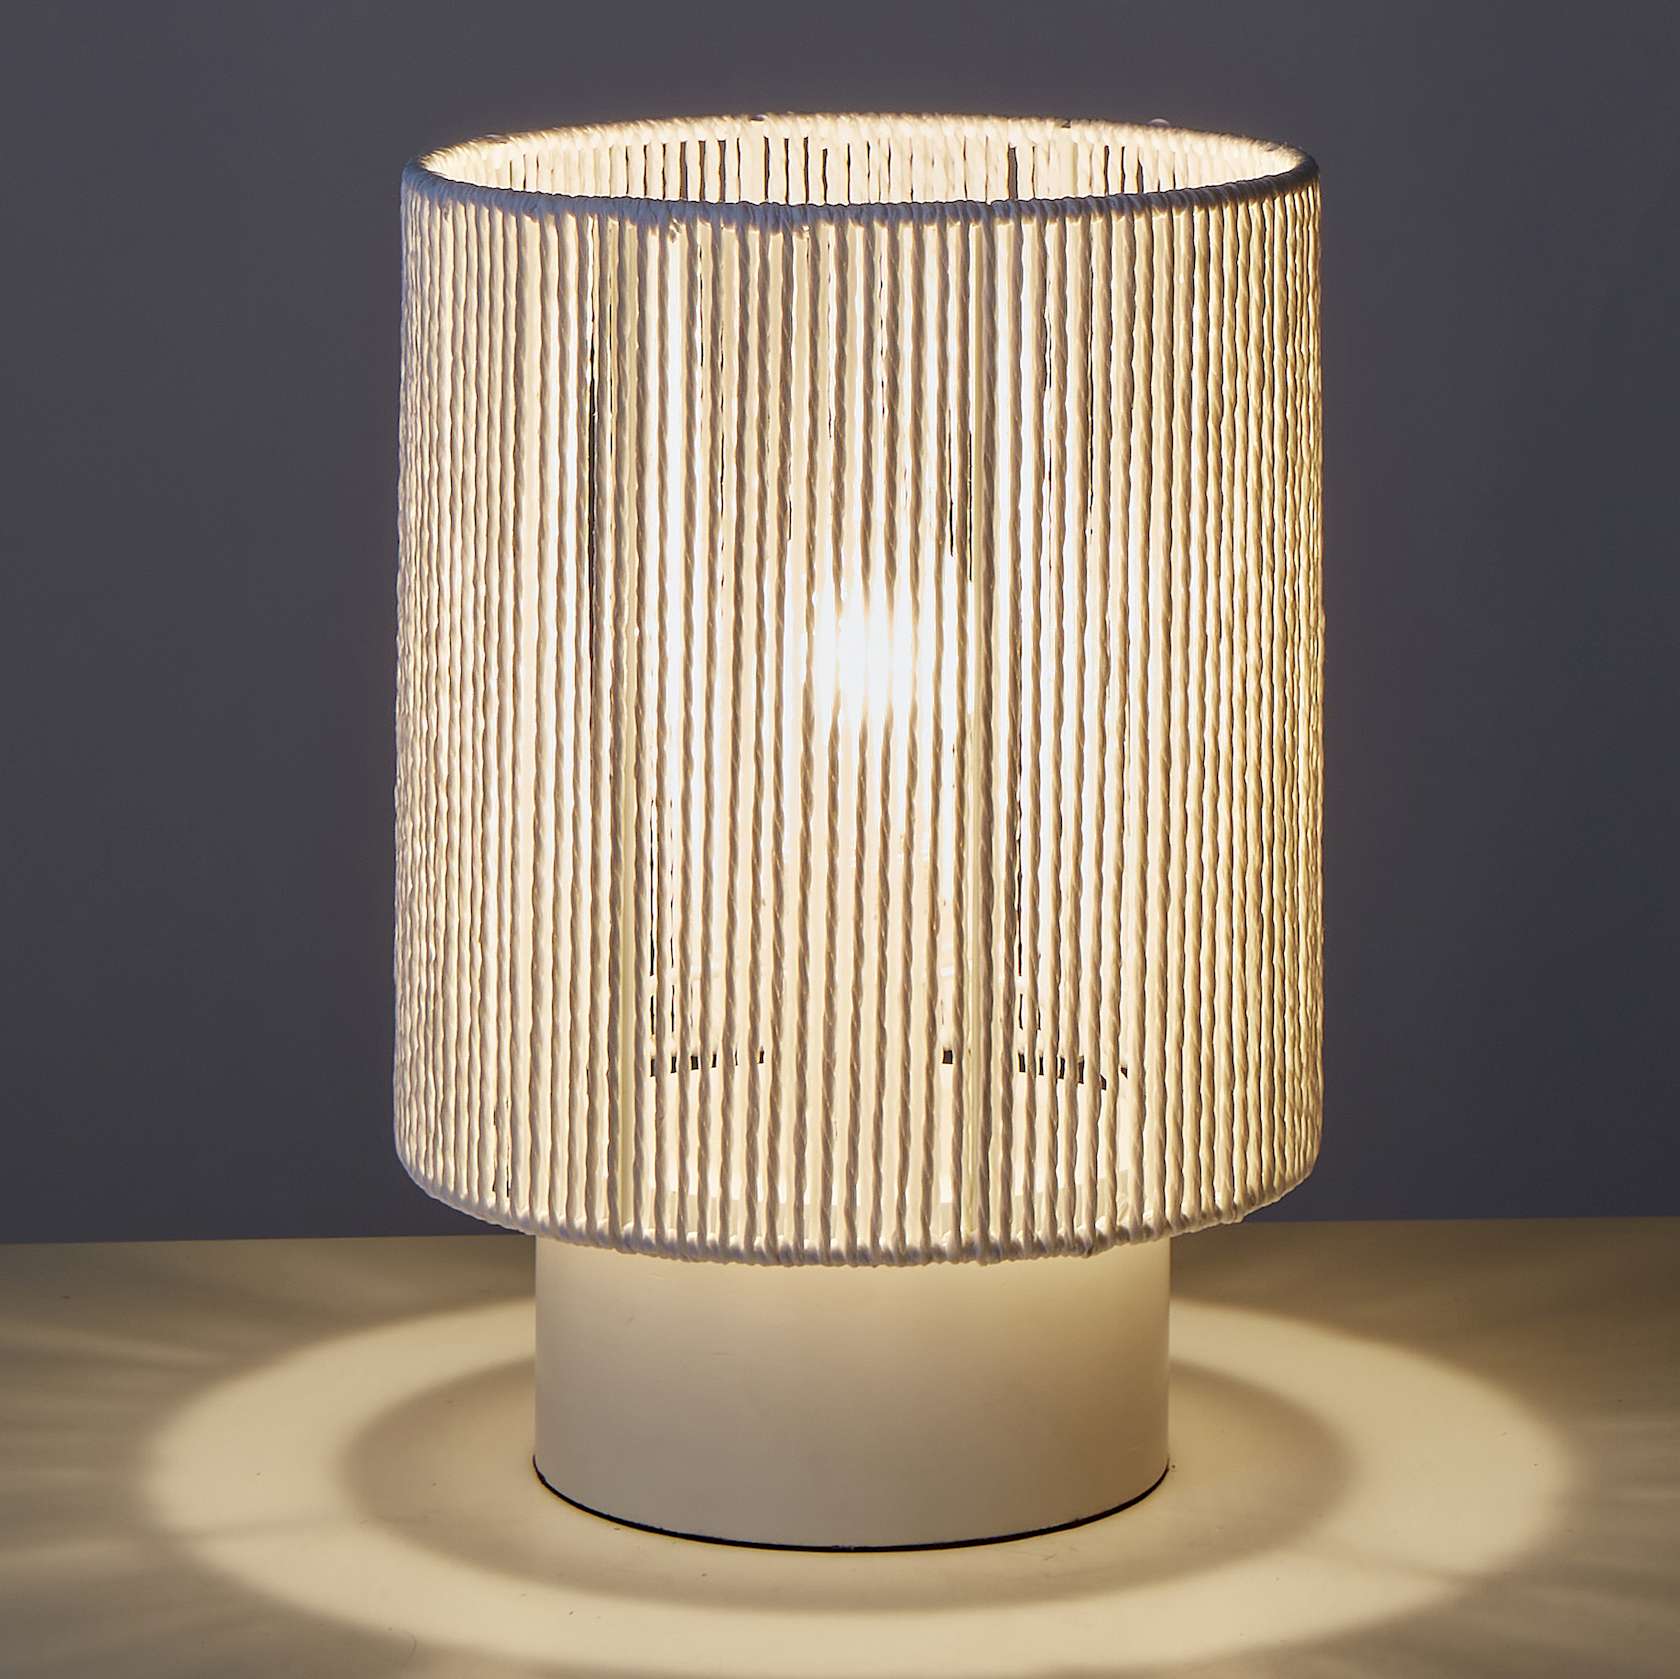 Caspi Weave Table Lamp